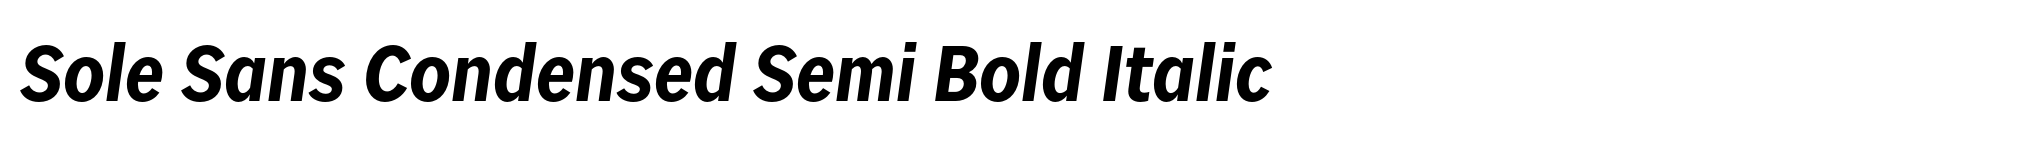 Sole Sans Condensed Semi Bold Italic image